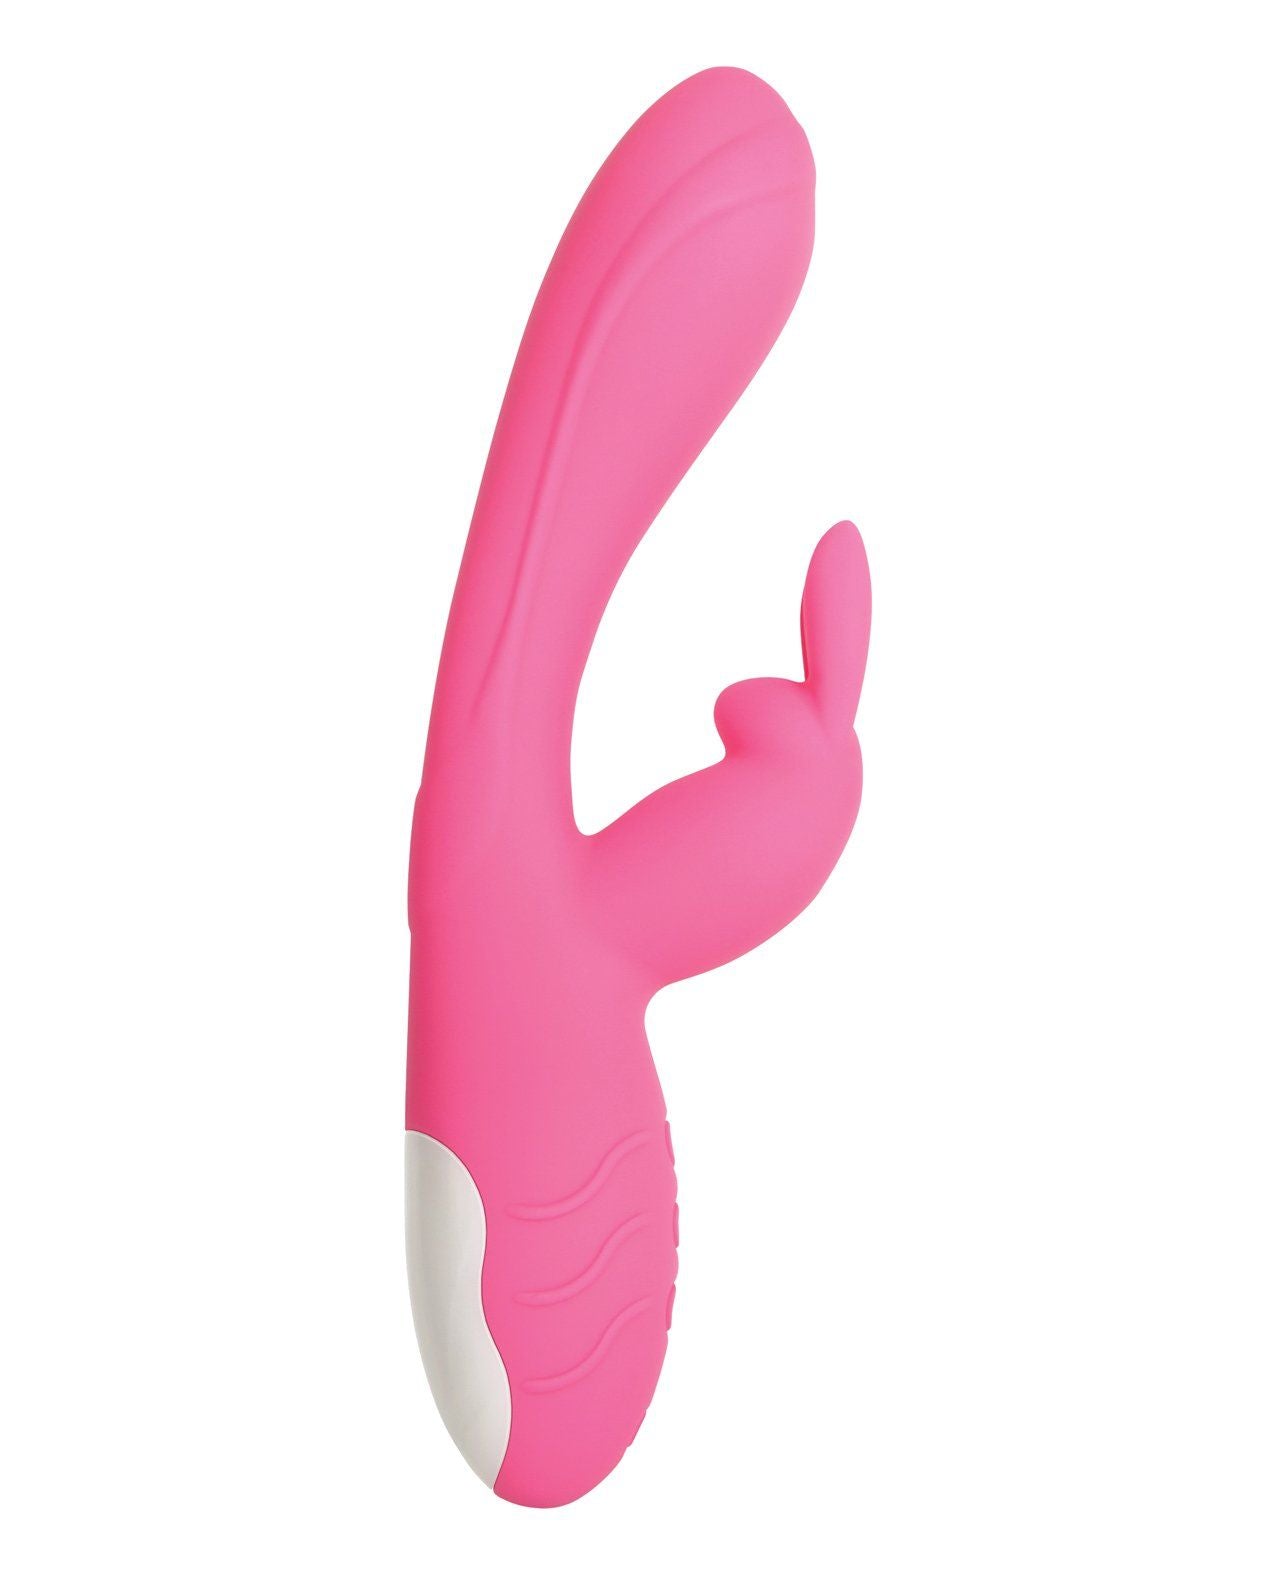 Evolved Bunny Kisses G-bliss O-maker - Pink